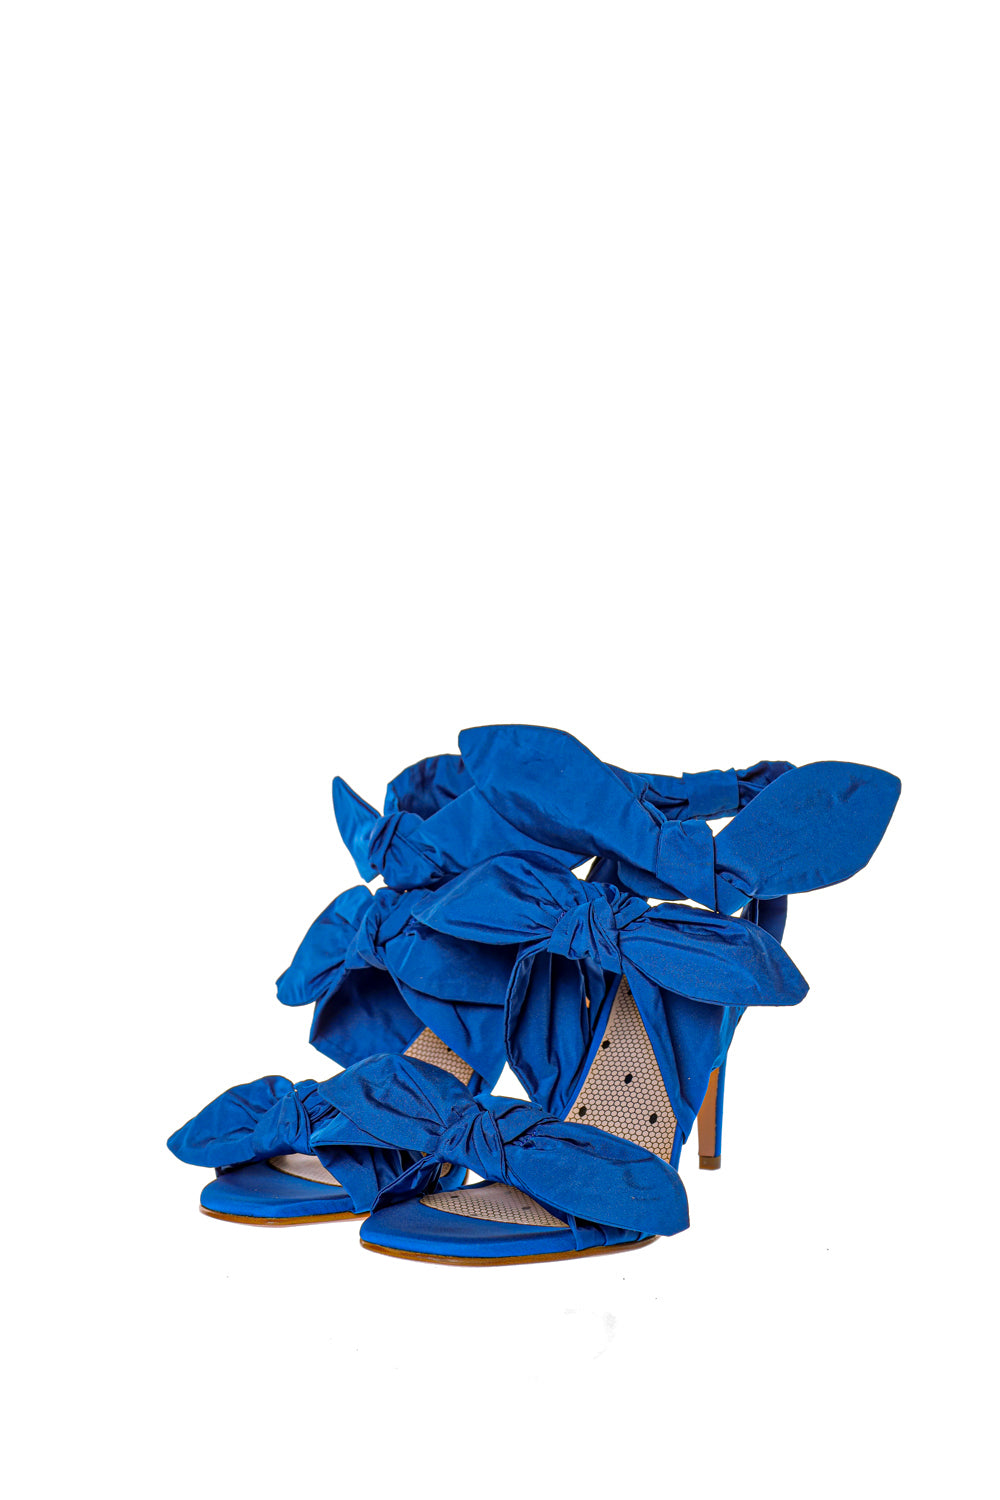 sandale albastre cu funde decorative